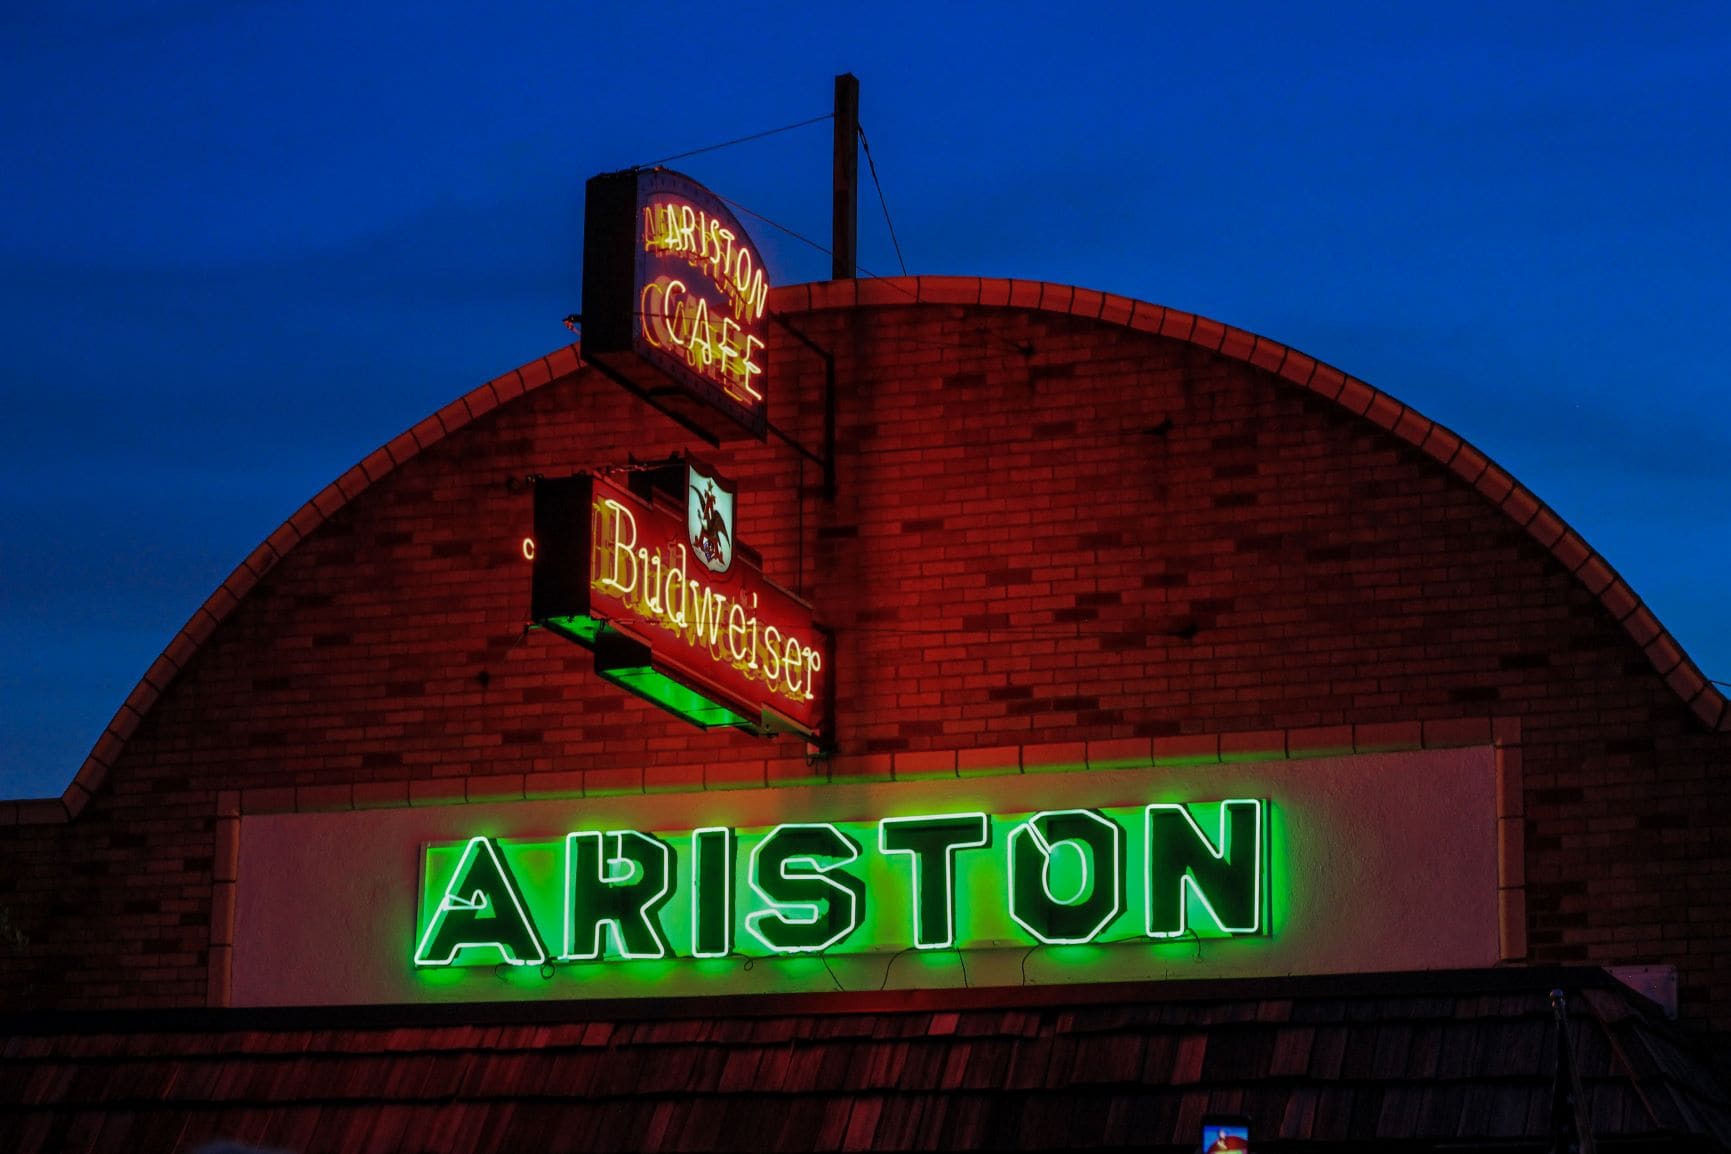 Ariston Cafe in Litchfield